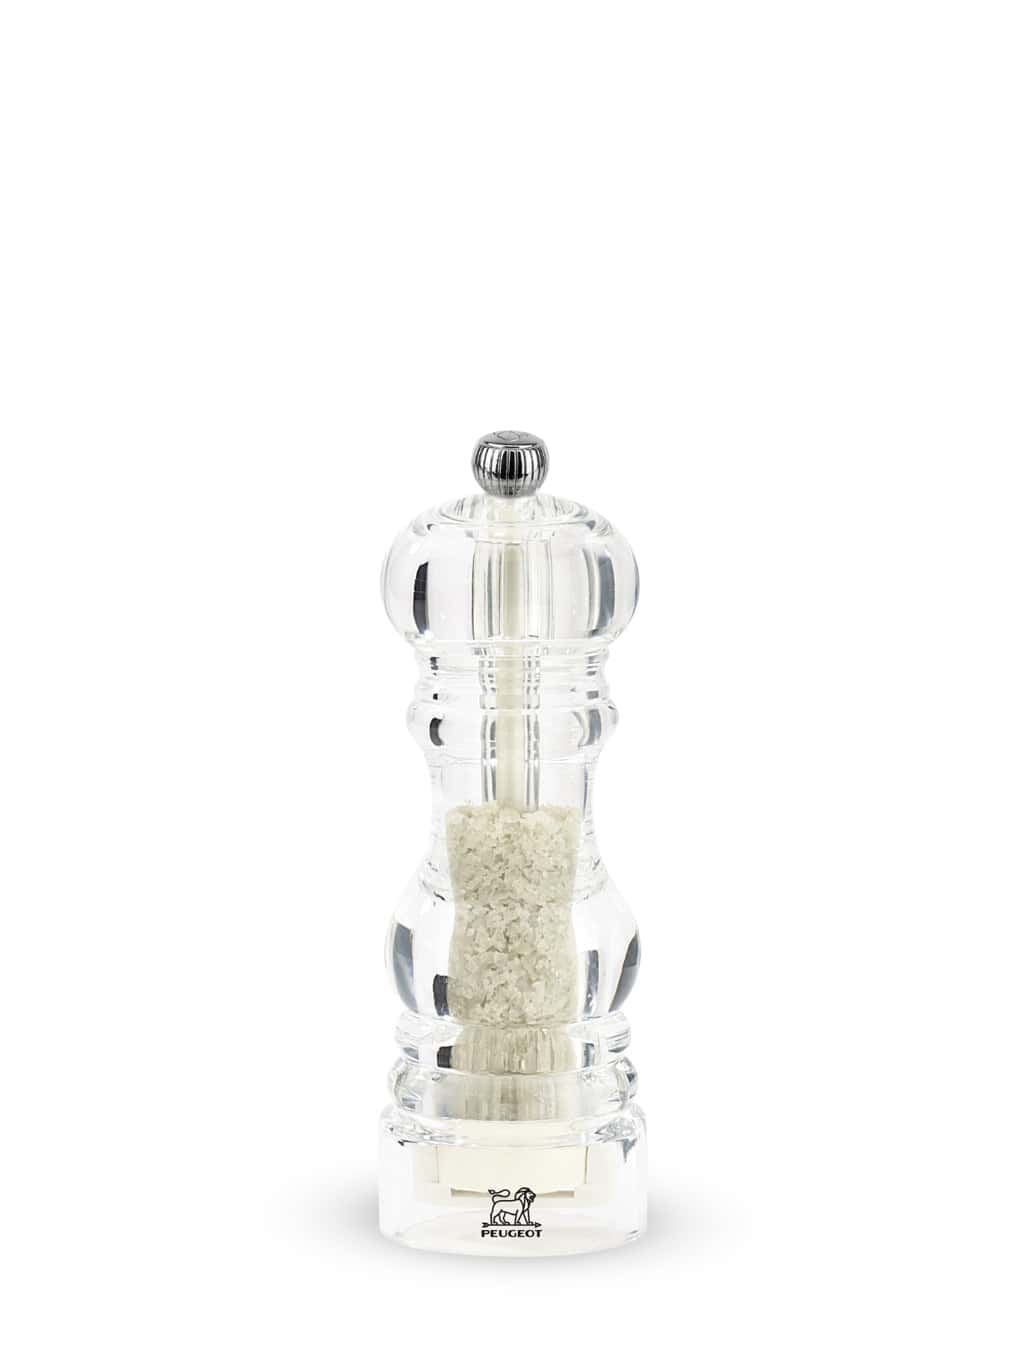 moulin à sel humide manuel en acryl h18cm